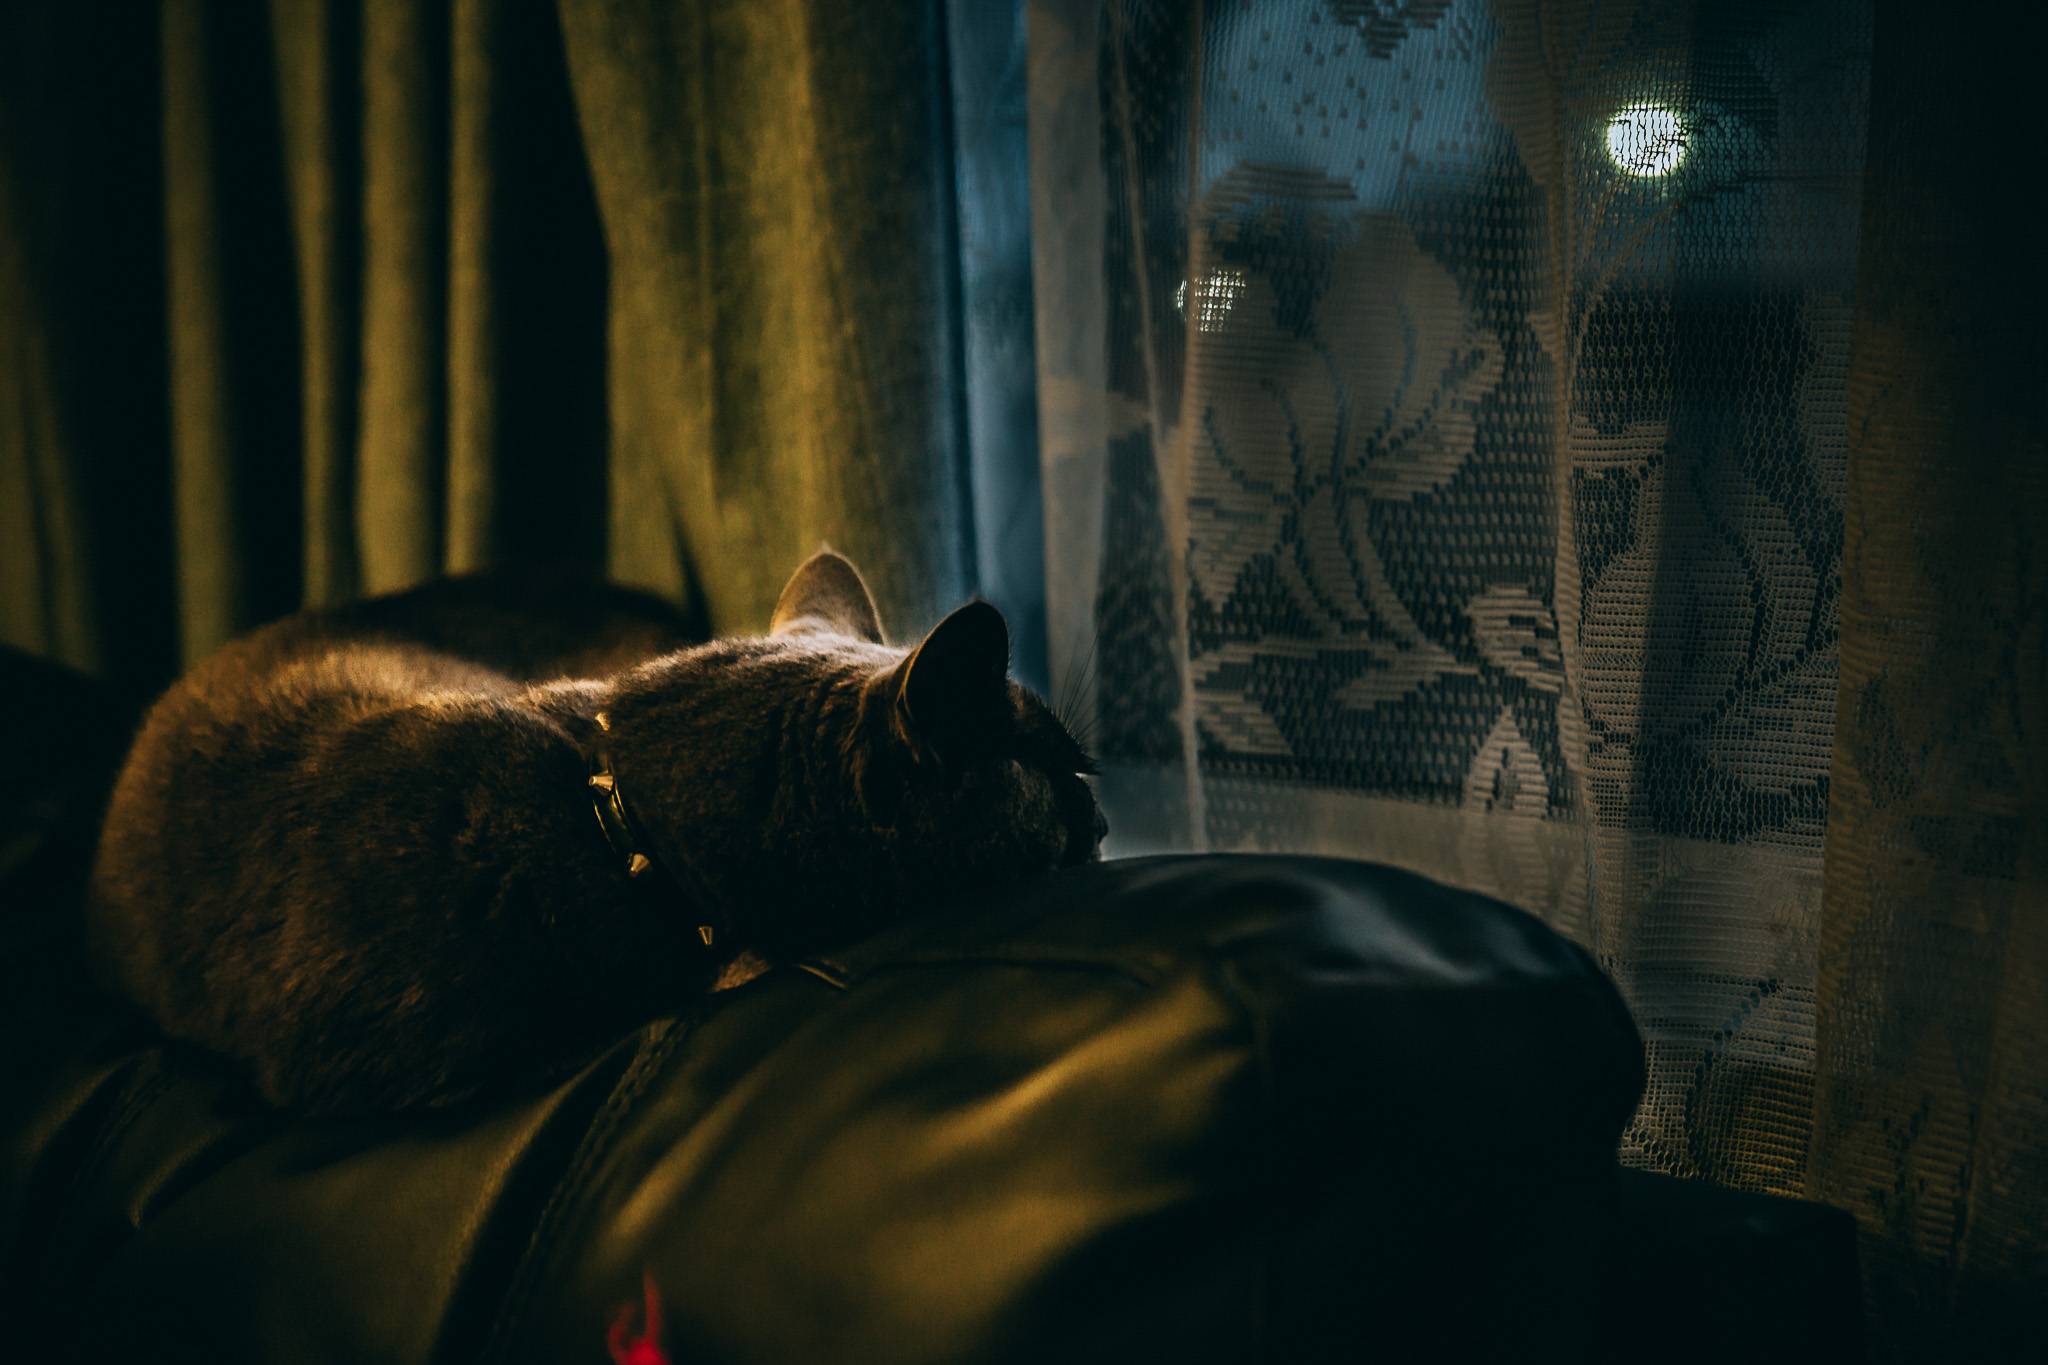 Кошка не дает спать ночью: решаем проблему кошачьей бессонницы